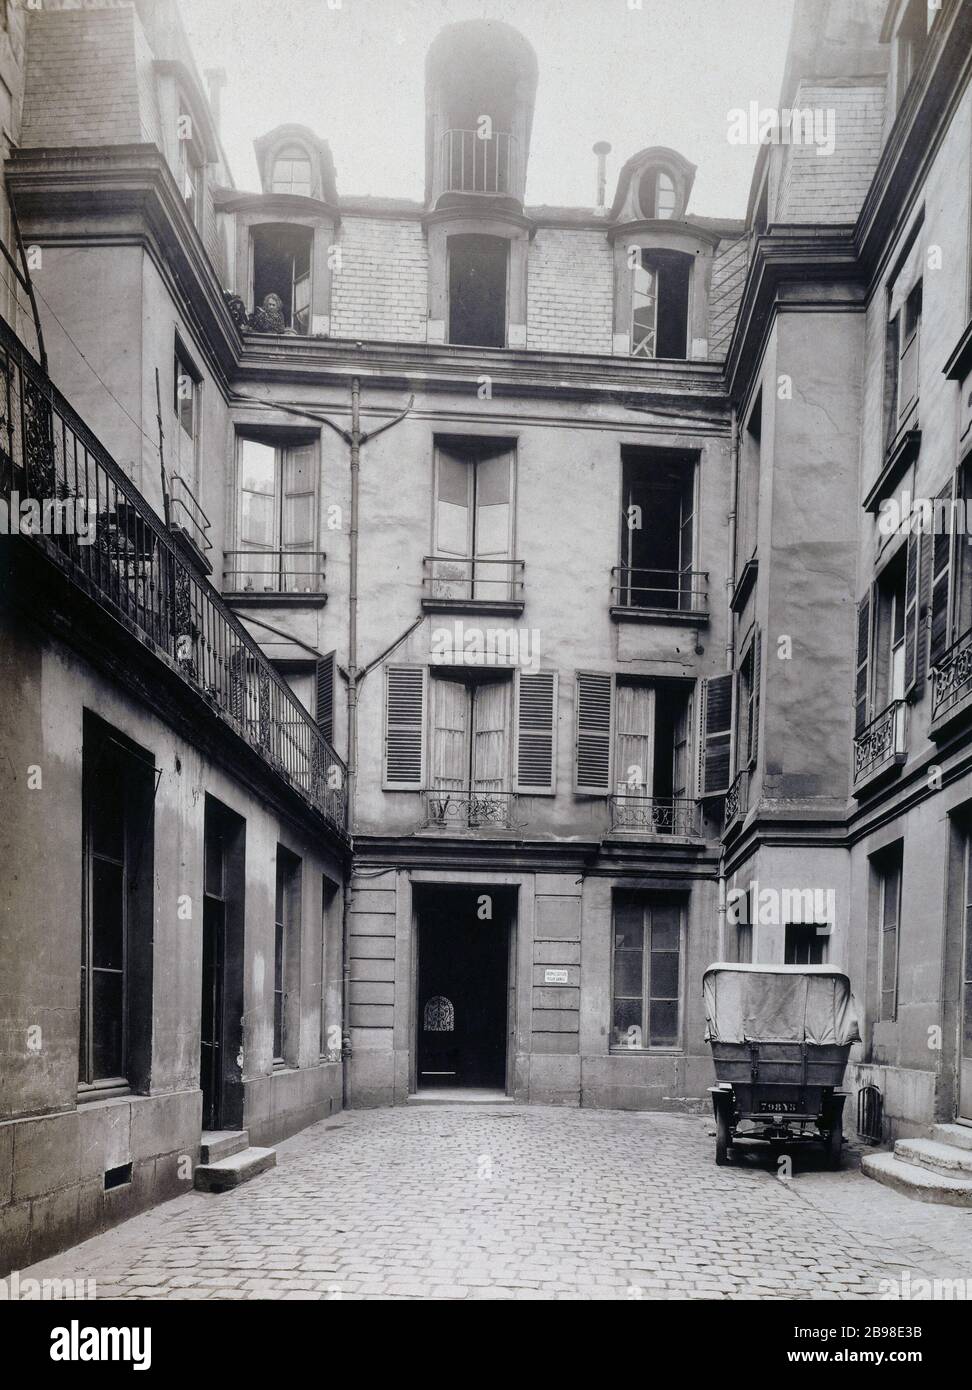 33 SAINT-ANDRE-DES ARTS 33, rue Saint-André-des-Arts, façade sur cour. Paris (VIème arr.). Photographie de Charles Lansiaux (1855-1939). Paris, musée Carnavalet. Stock Photo